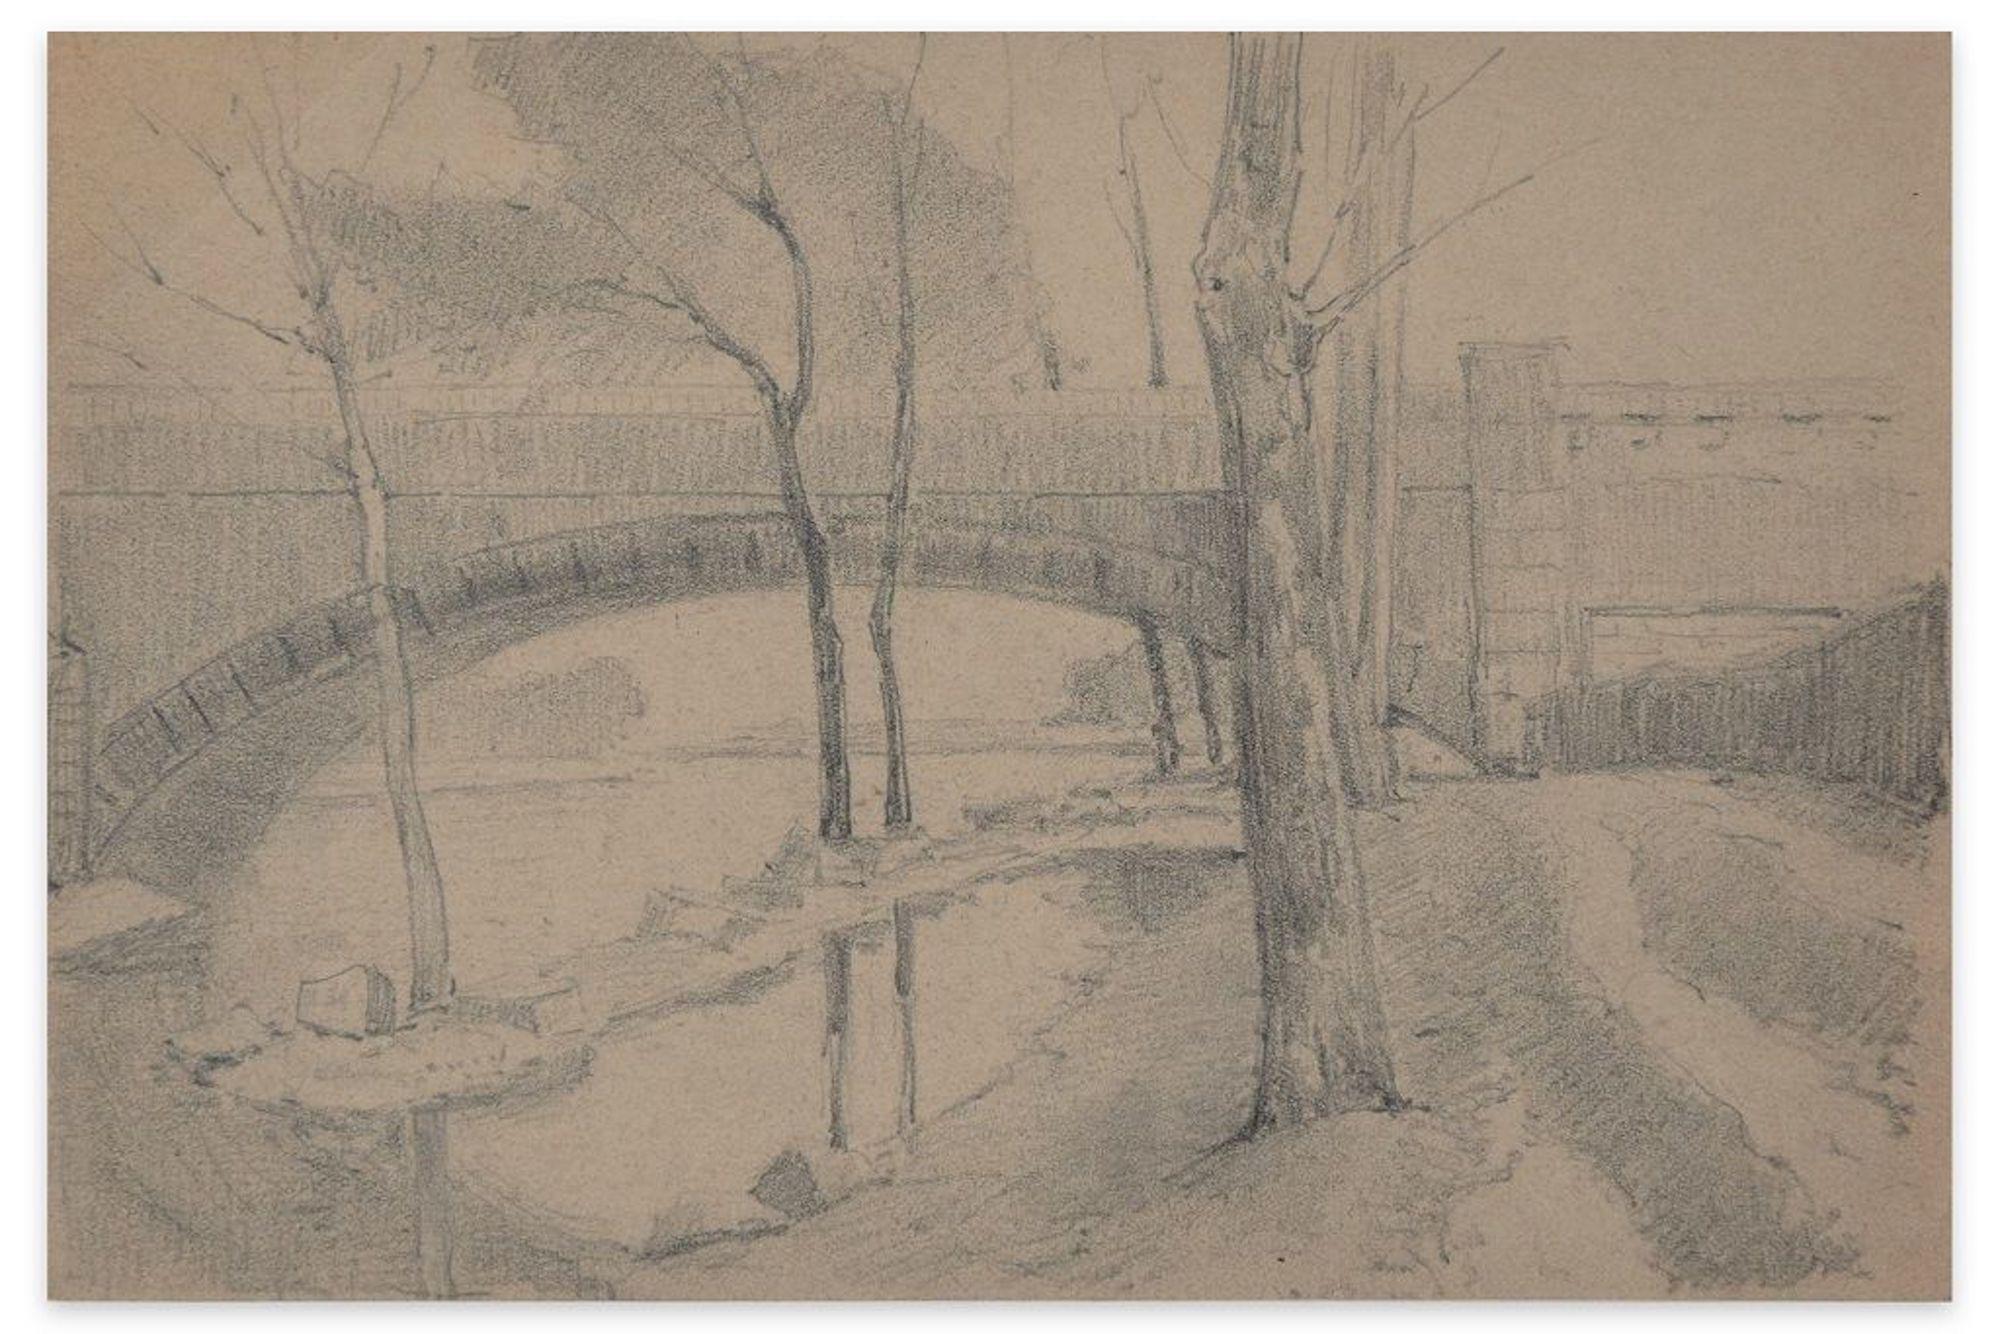 Bridge on the River - Fusain et crayon par E.-L. Minet - 1919